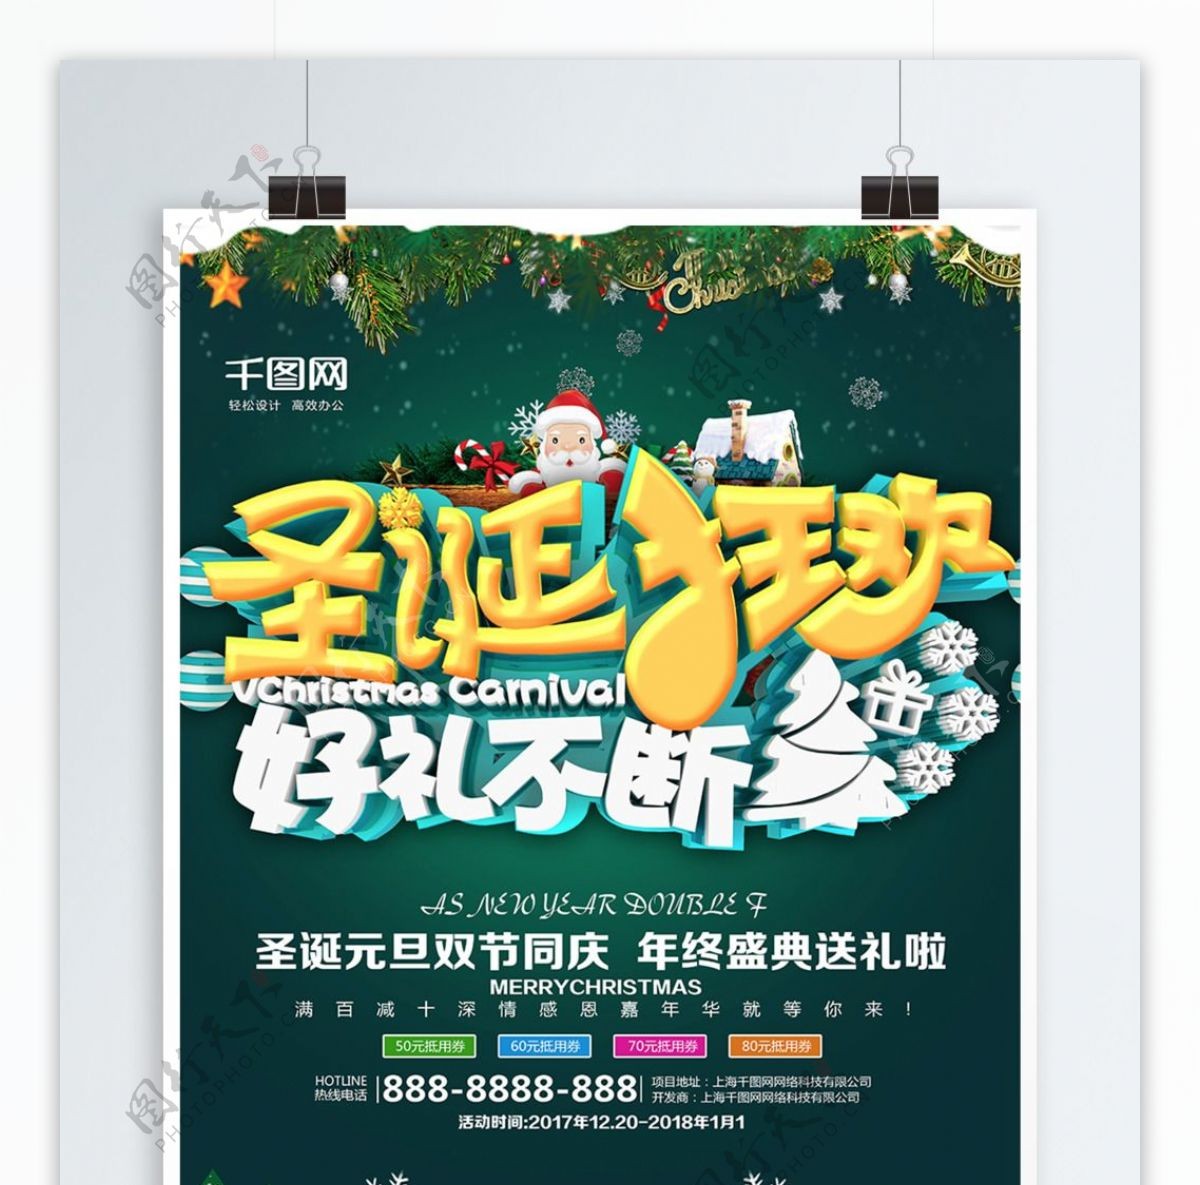 绿色精美大气圣诞狂欢促销海报PSD模板